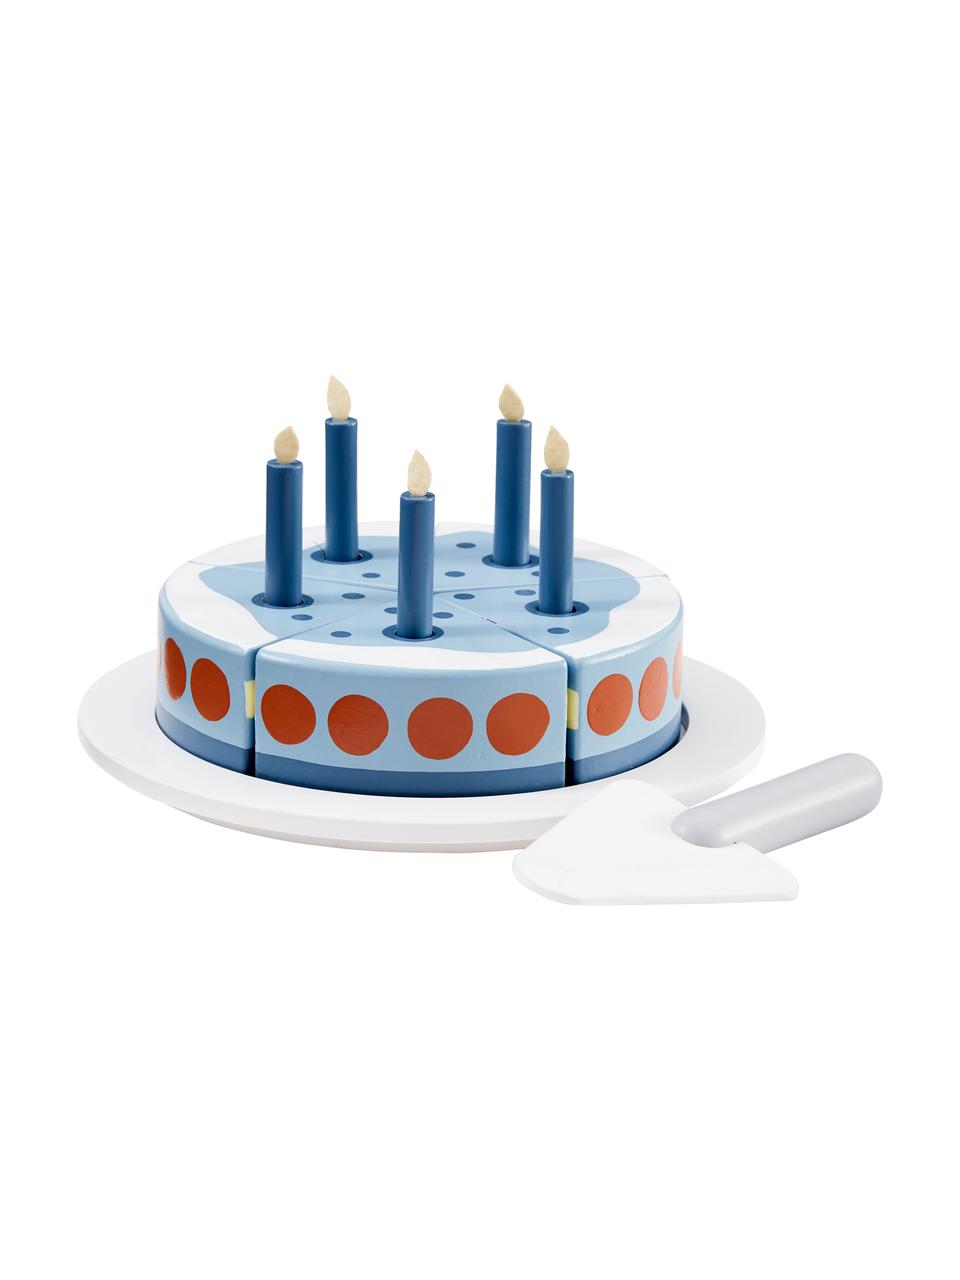 Spielzeug-Set Birthday Cake, Holz, Blau, Weiß, Rot, Ø 19 x H 10 cm